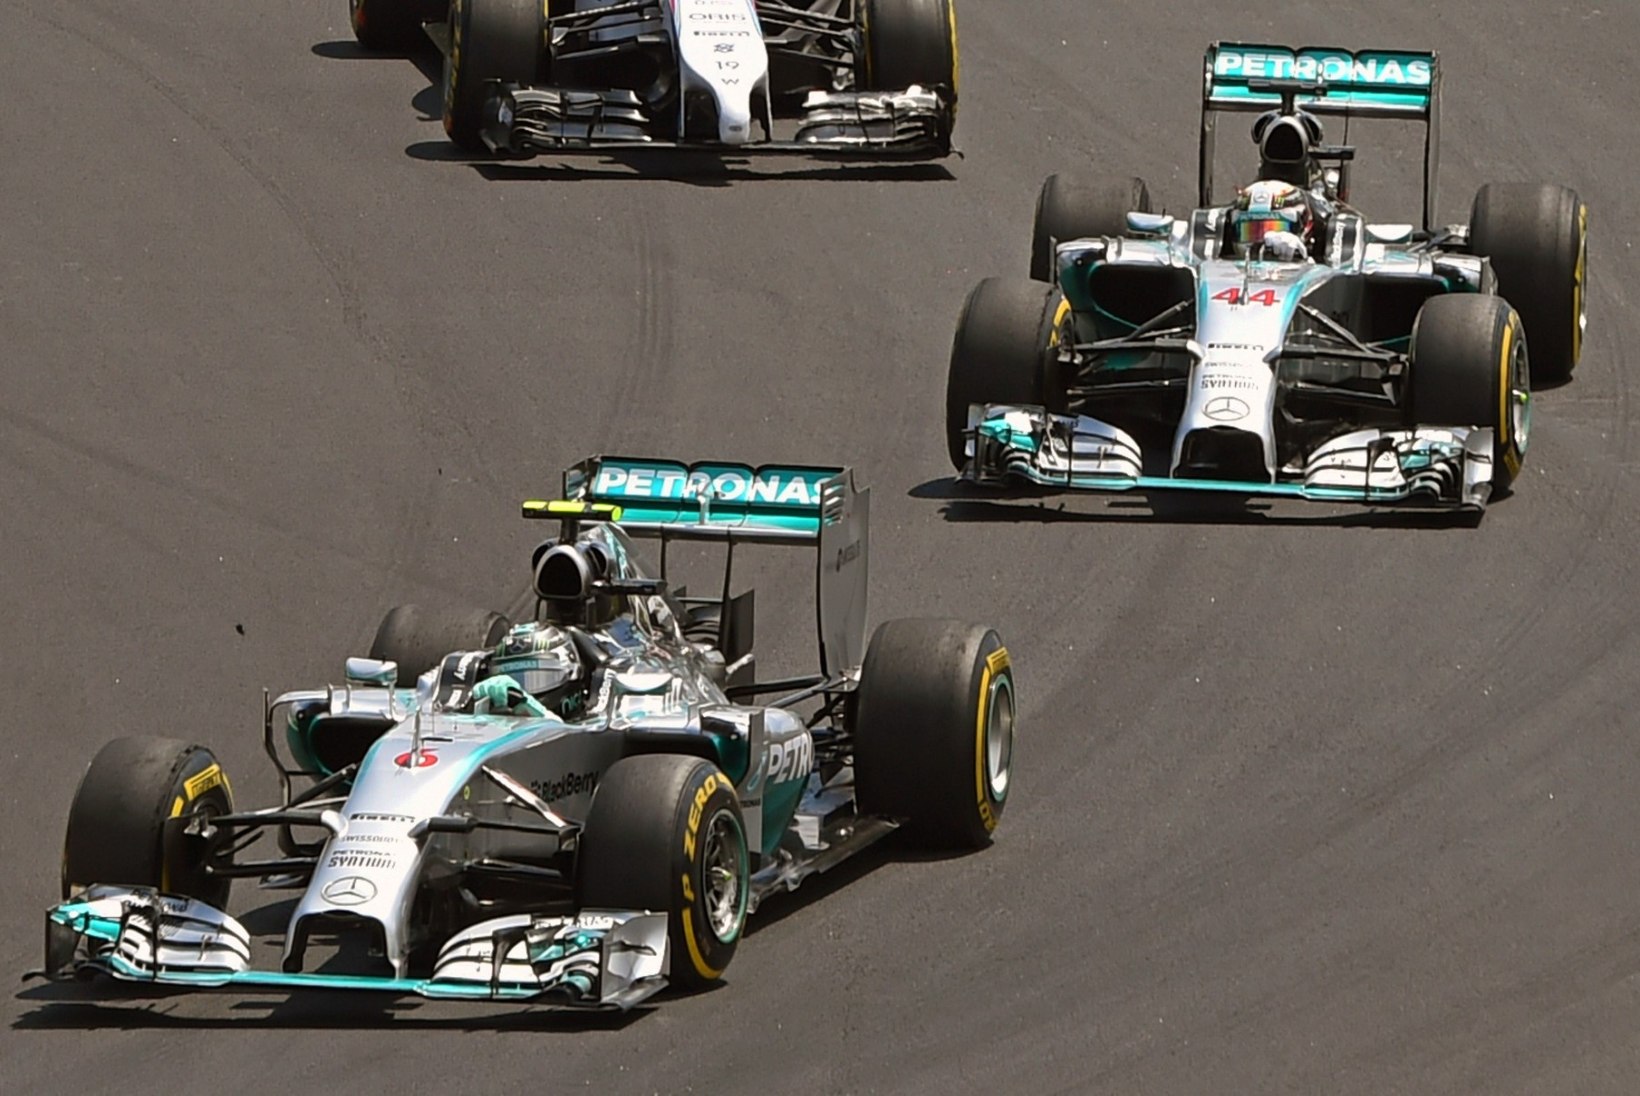 FOTOD: Rosberg võitis eelviimase etapi, Hamilton säilitas liidrikoha